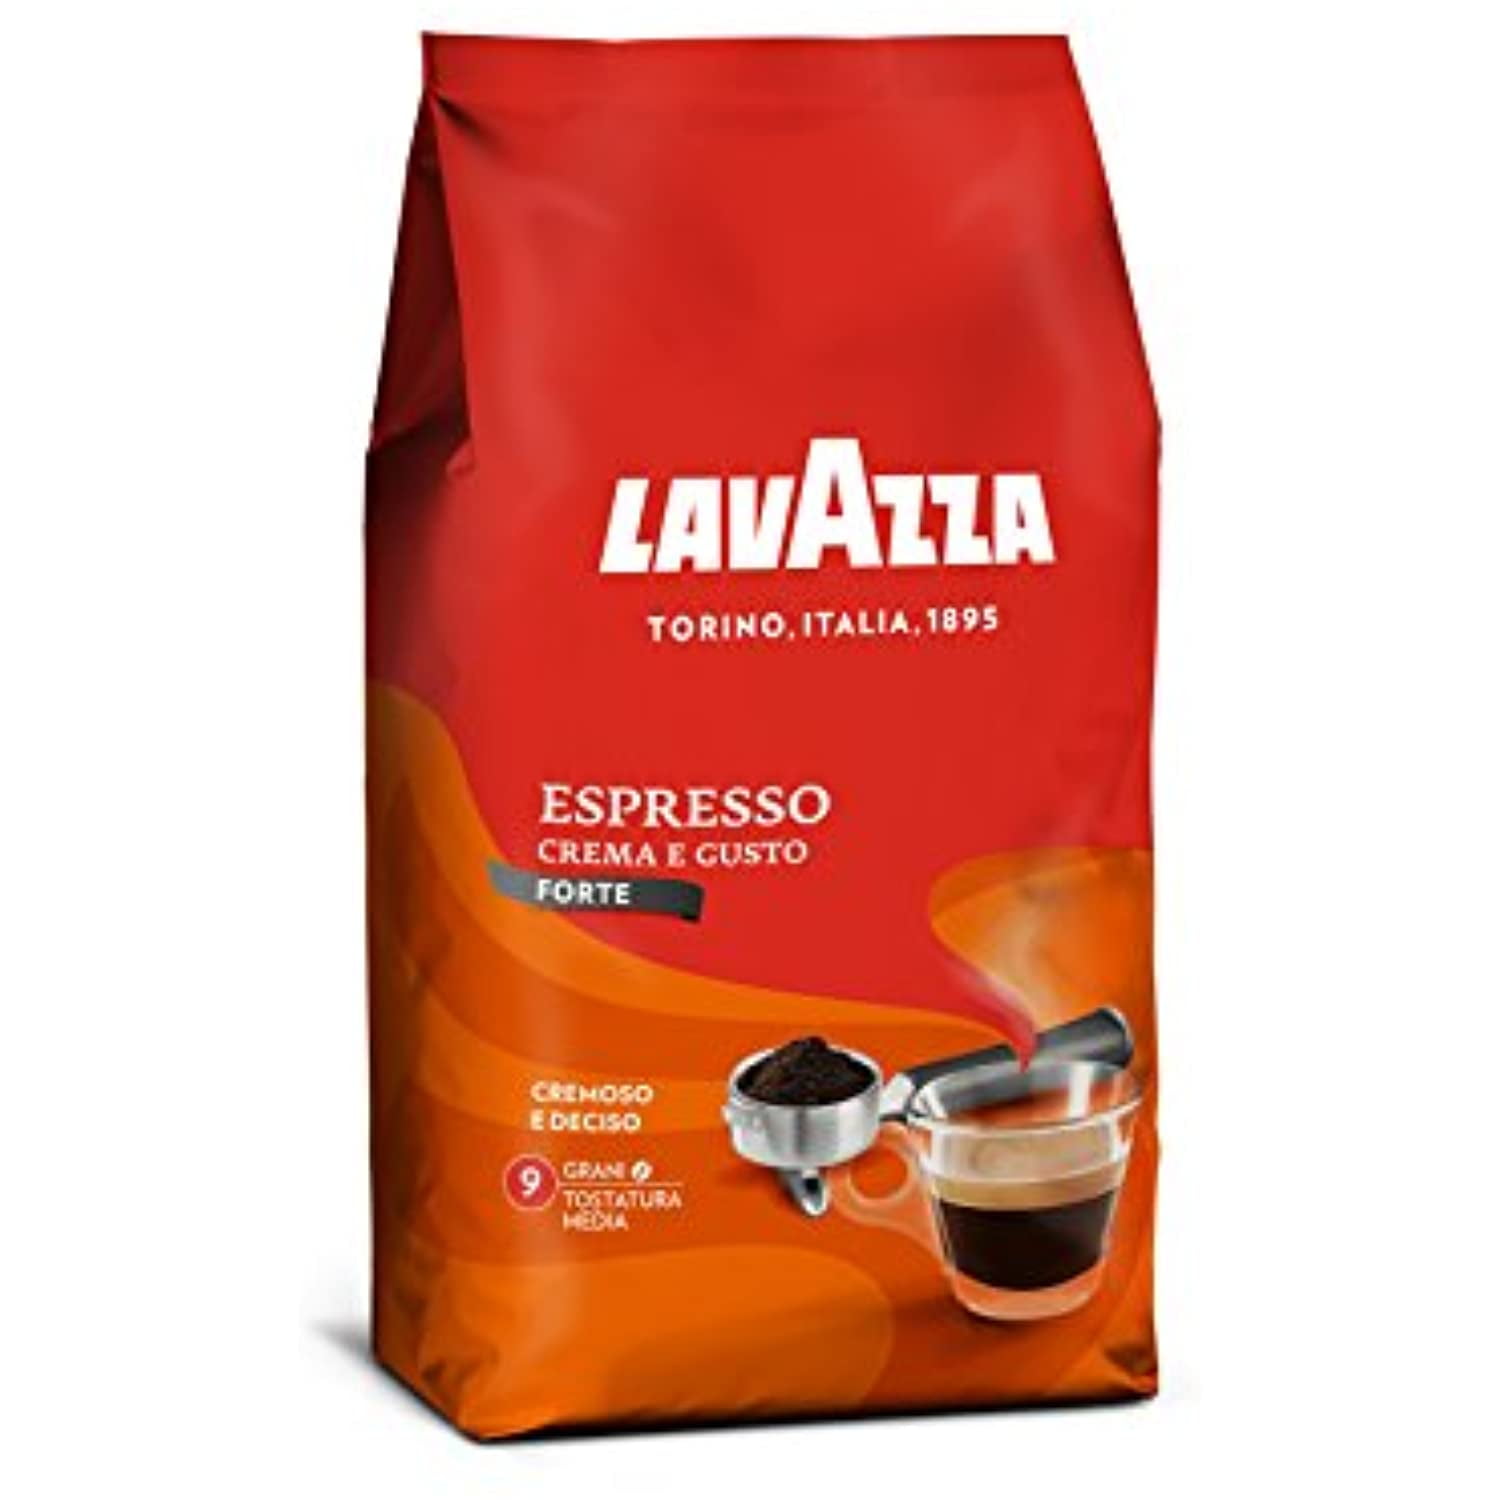 Lavazza Espresso Maestro 1000 g beans